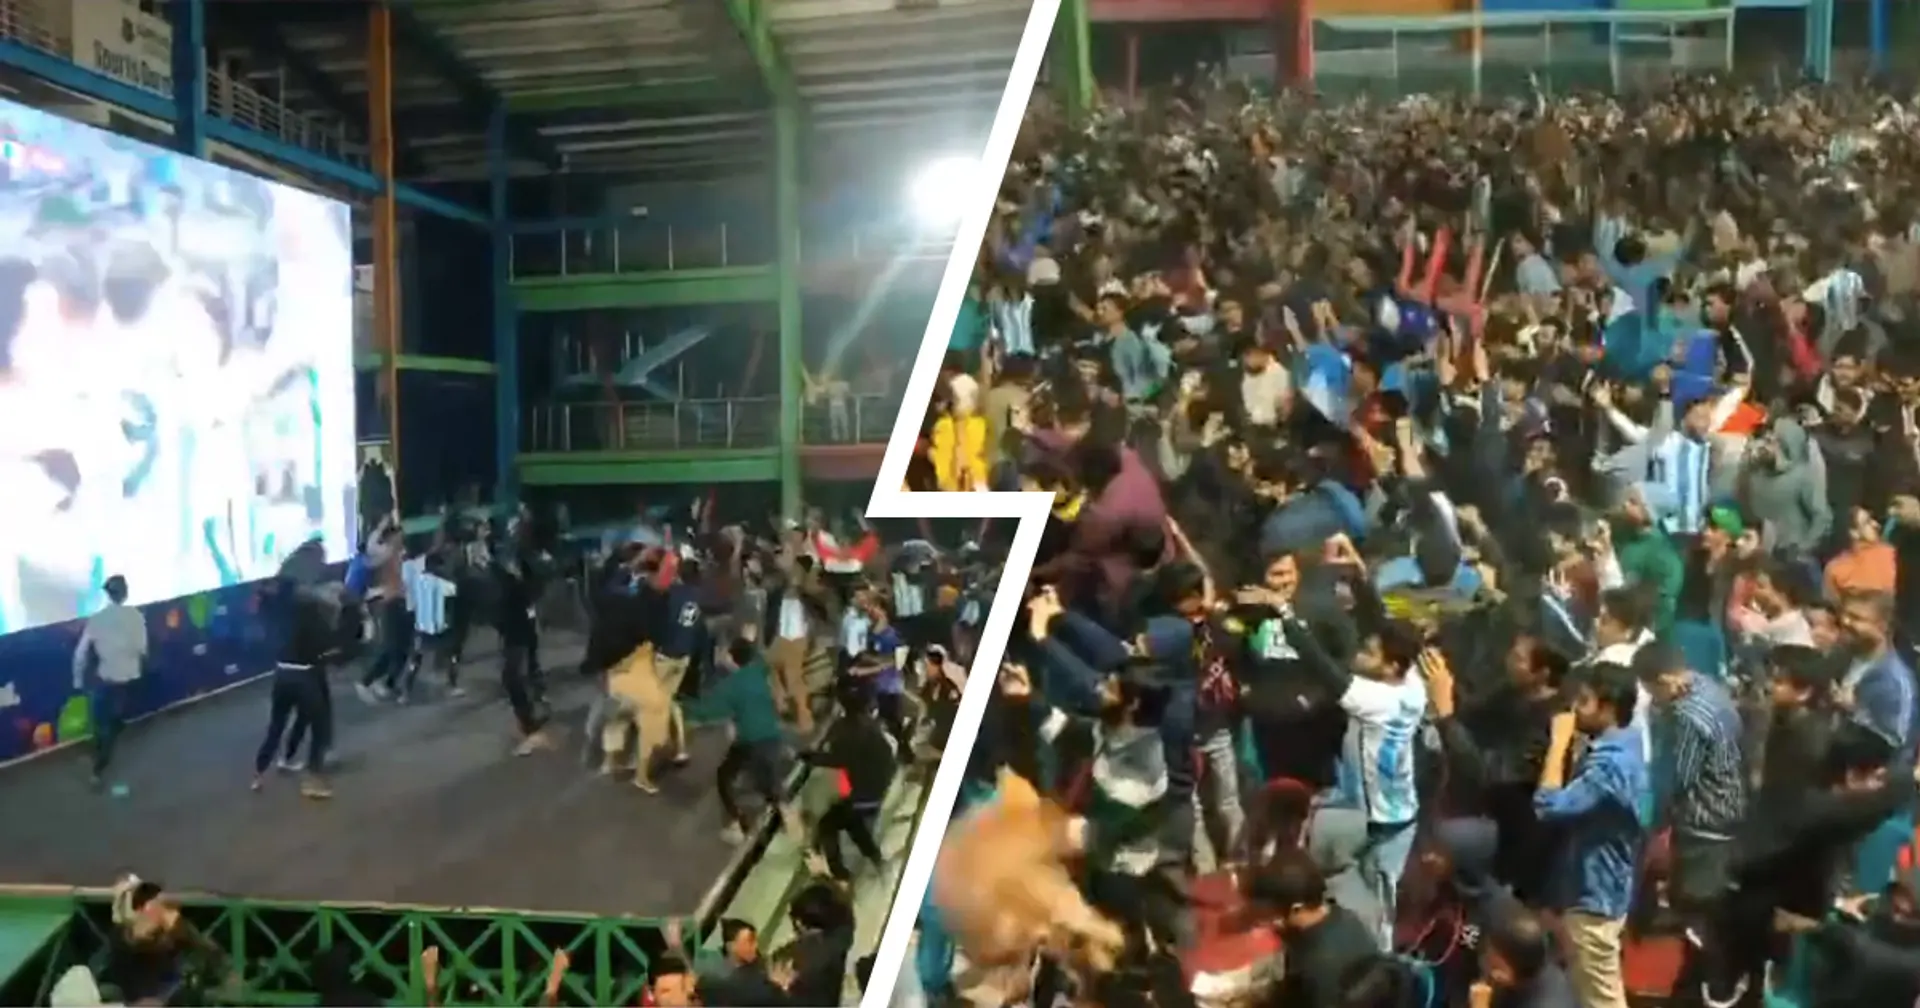 Les supporters argentins au Bangladesh deviennent fous après le but de Messi contre le Mexique (vidéo)